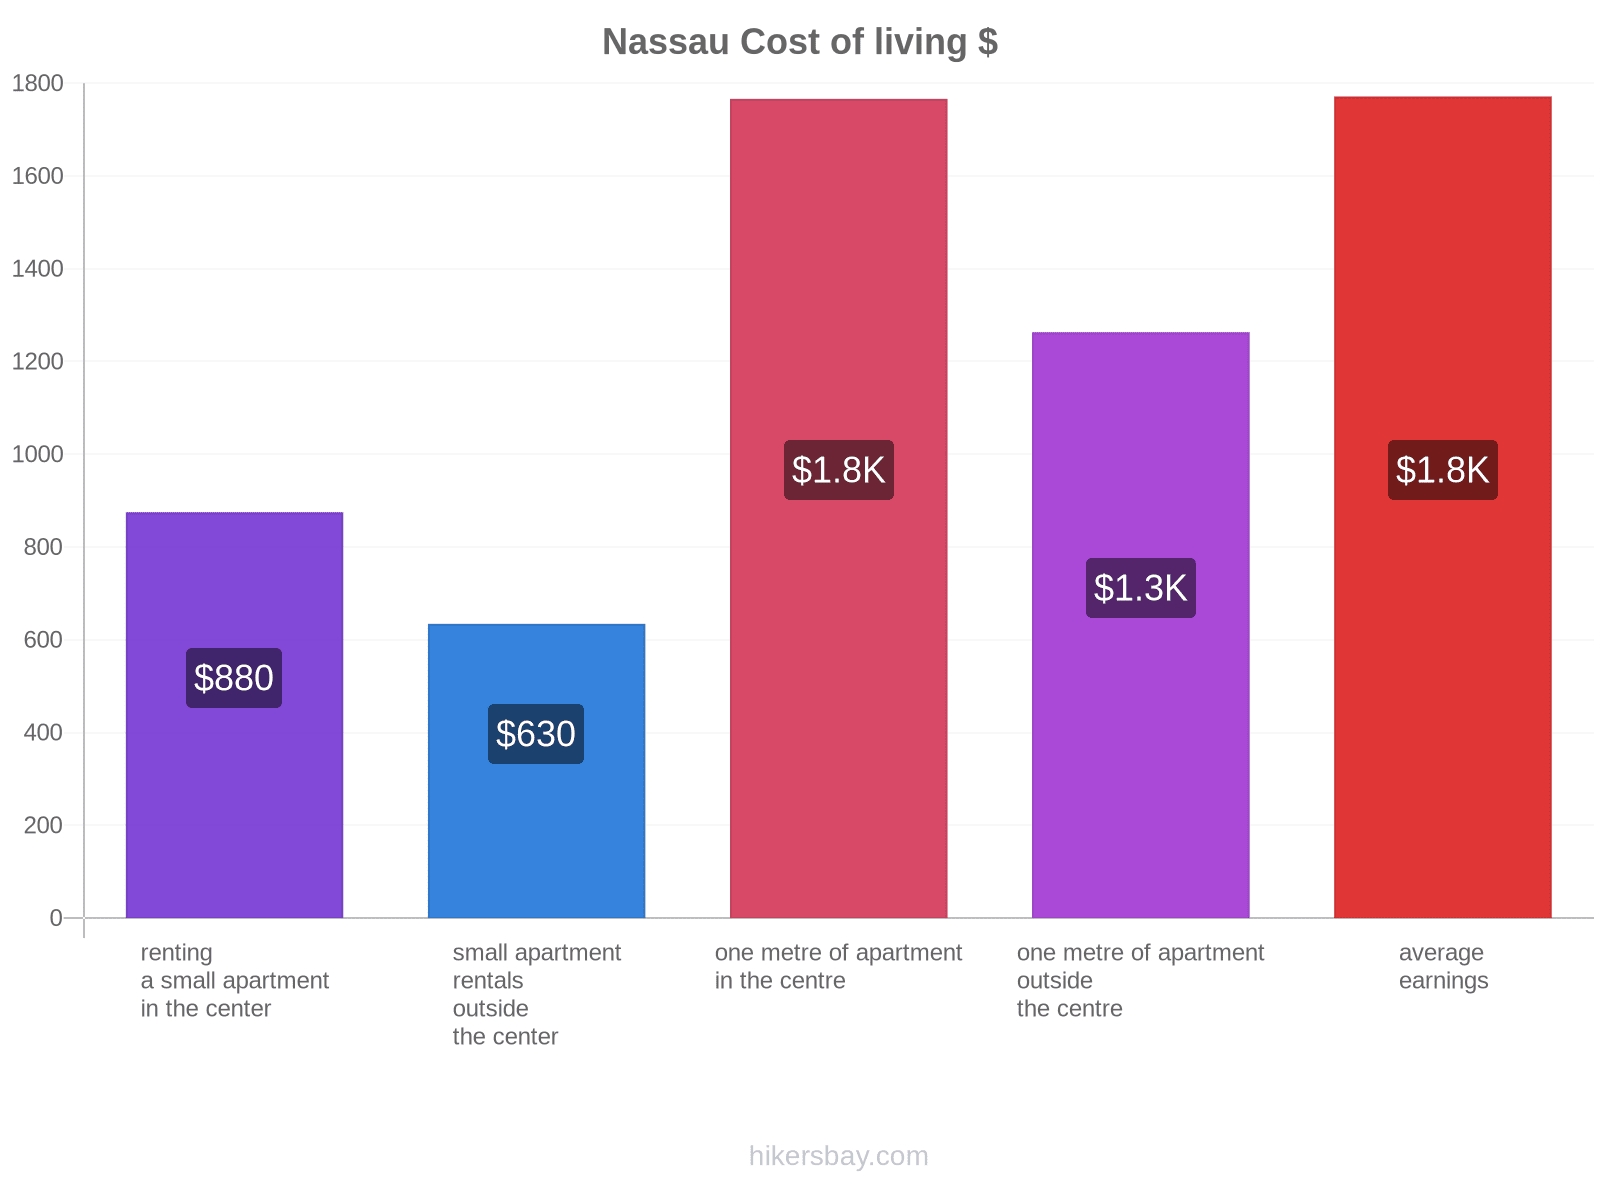 Nassau cost of living hikersbay.com